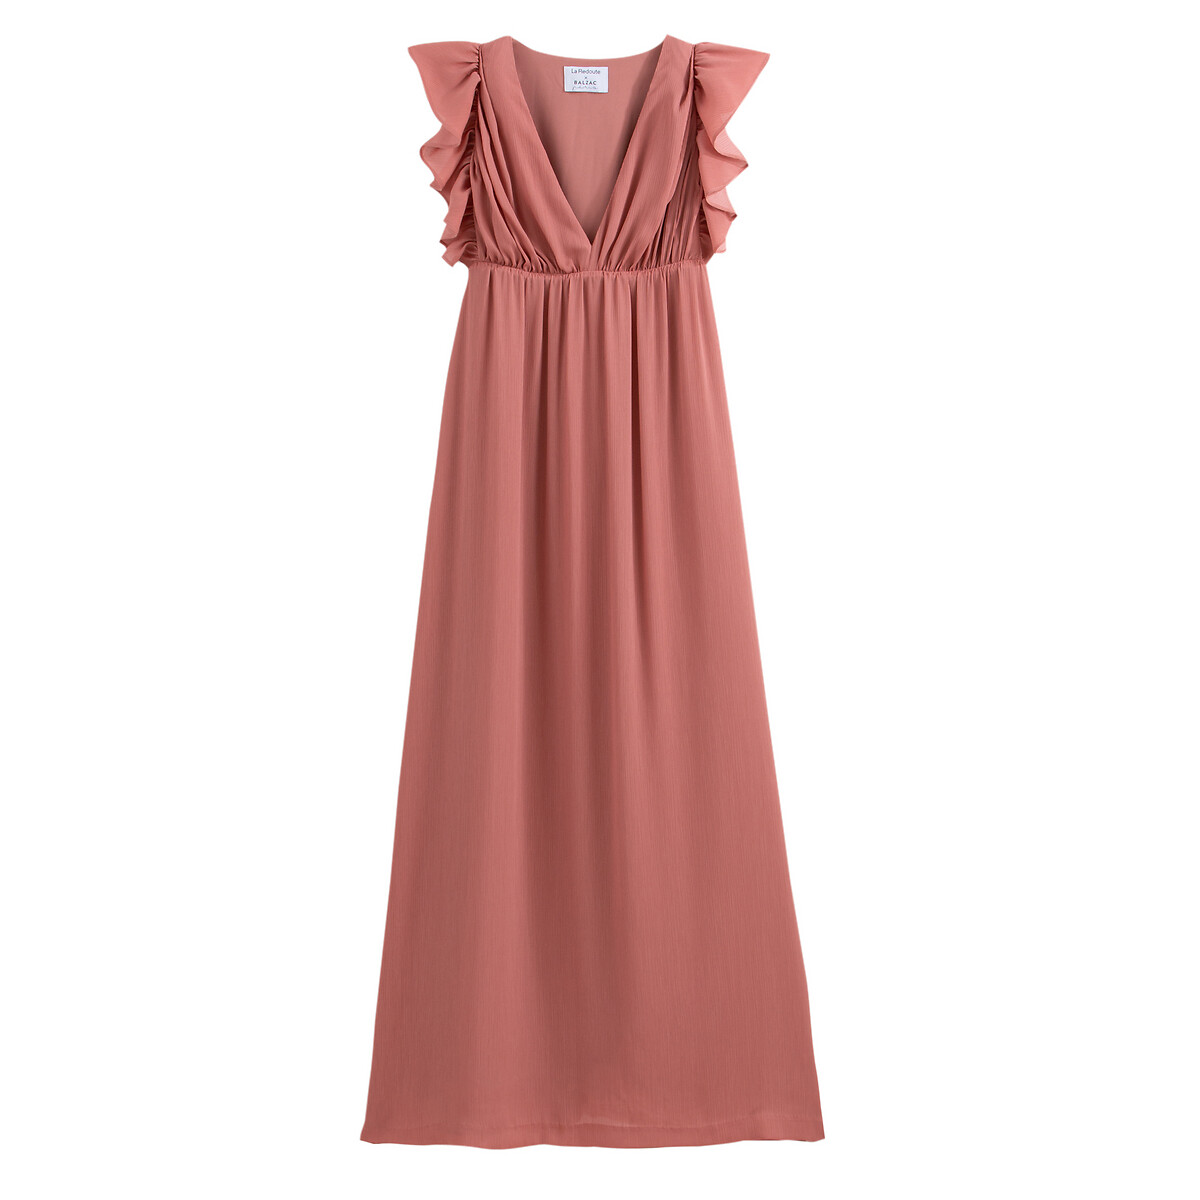 Платье La Redoute Длинное без рукавов 44 (FR) - 50 (RUS) розовый, размер 44 (FR) - 50 (RUS) Длинное без рукавов 44 (FR) - 50 (RUS) розовый - фото 1